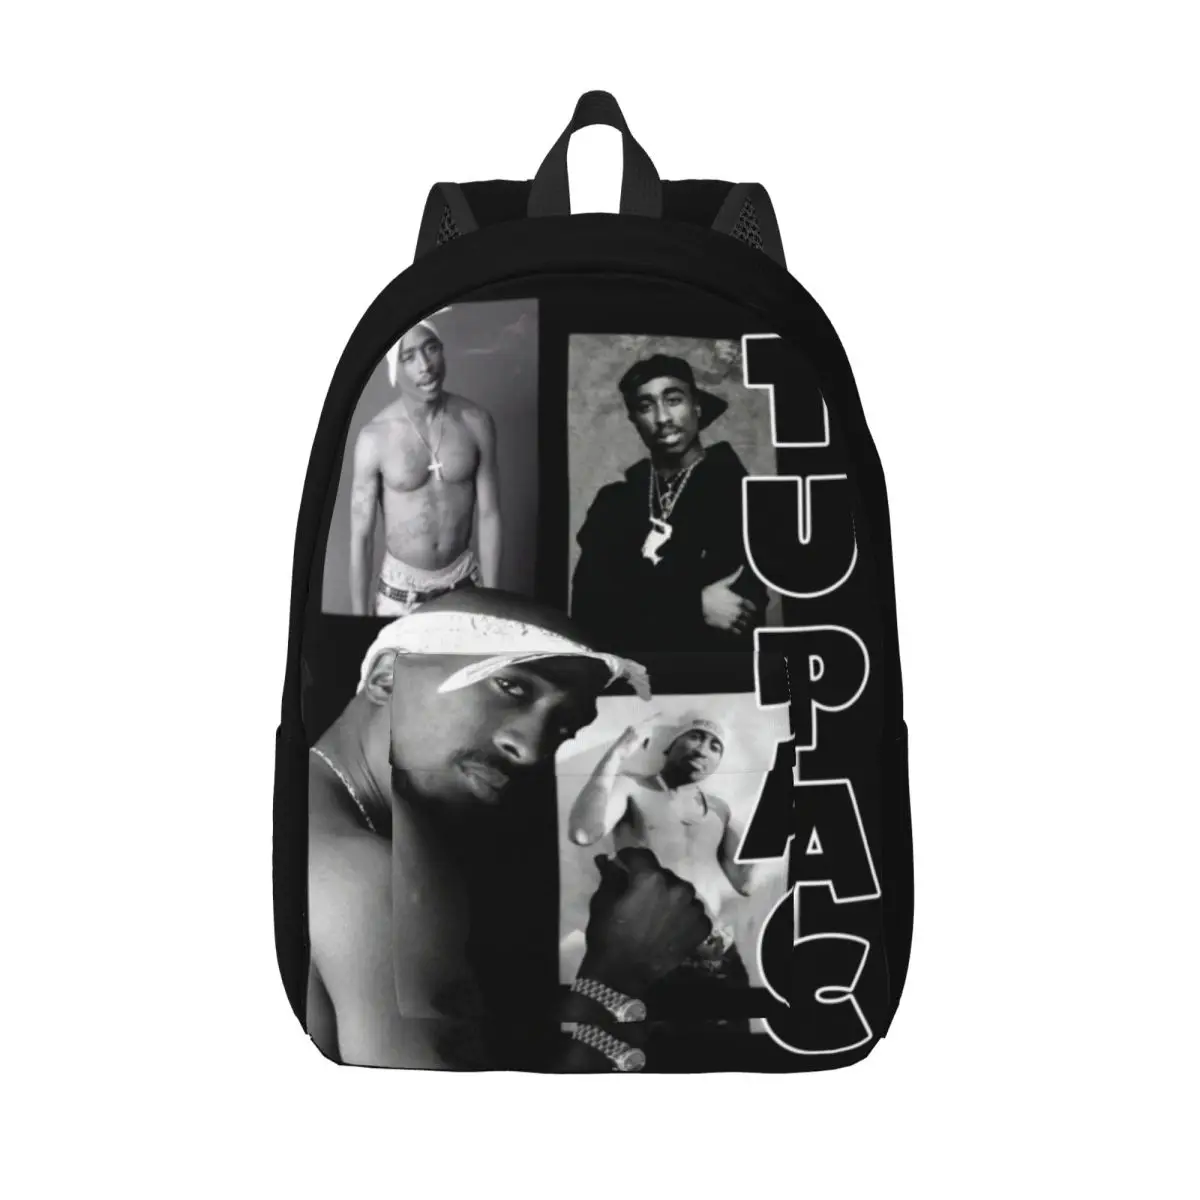 

Поэтический справедливый рюкзак для мужчин и женщин, классный деловой рюкзак для старшей школы, Tupac 2pac, хип-хоп, певец, сумка на плечо для ноутбука, спорт